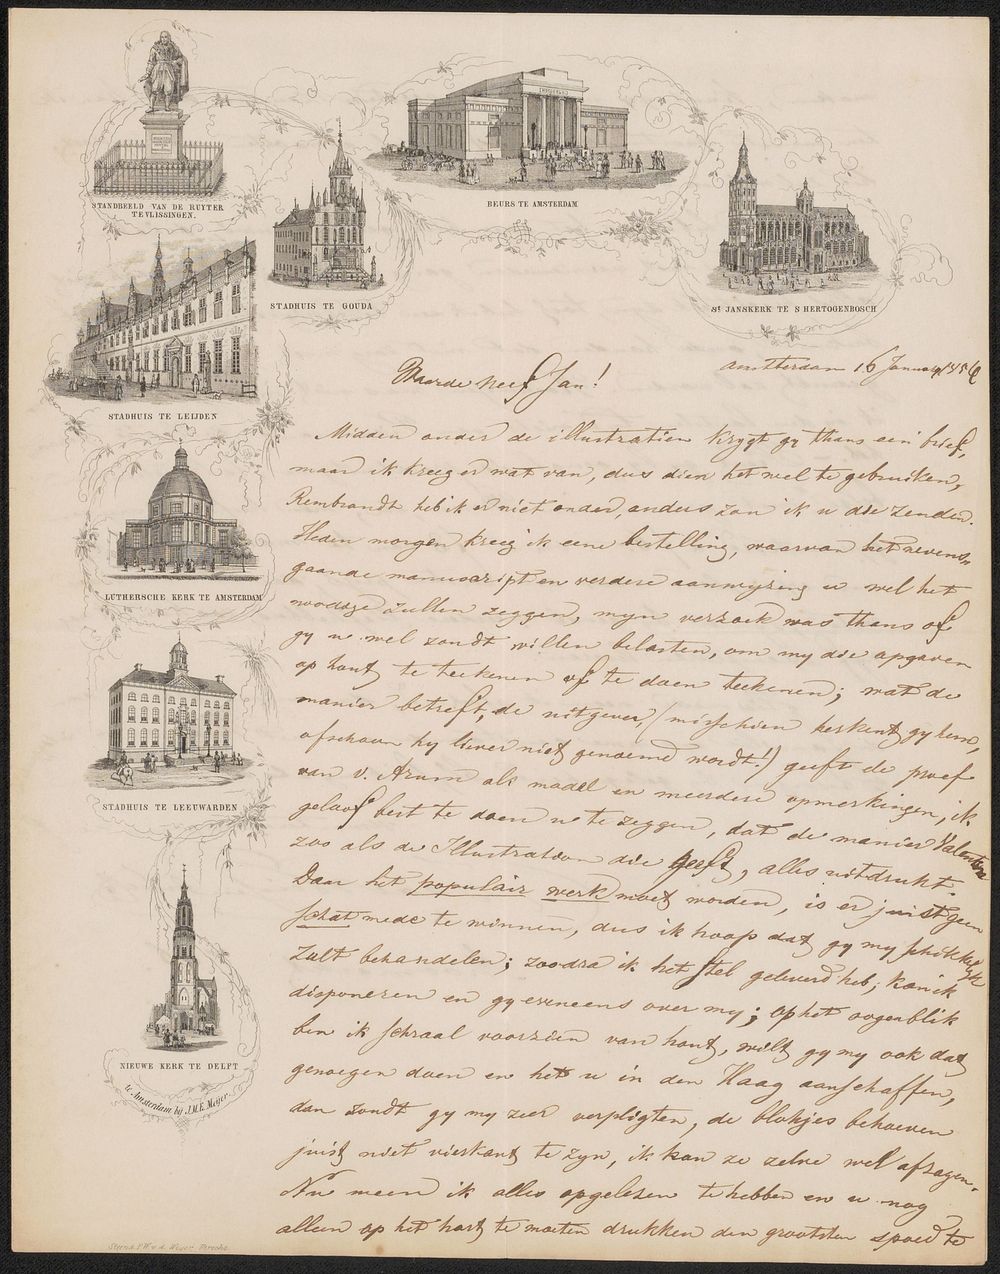 Brief aan Jan Weissenbruch (1854) by Isaac Weissenbruch, Gebroeders van de Weijer, Jan Mattheus Eldert Meijer and anonymous